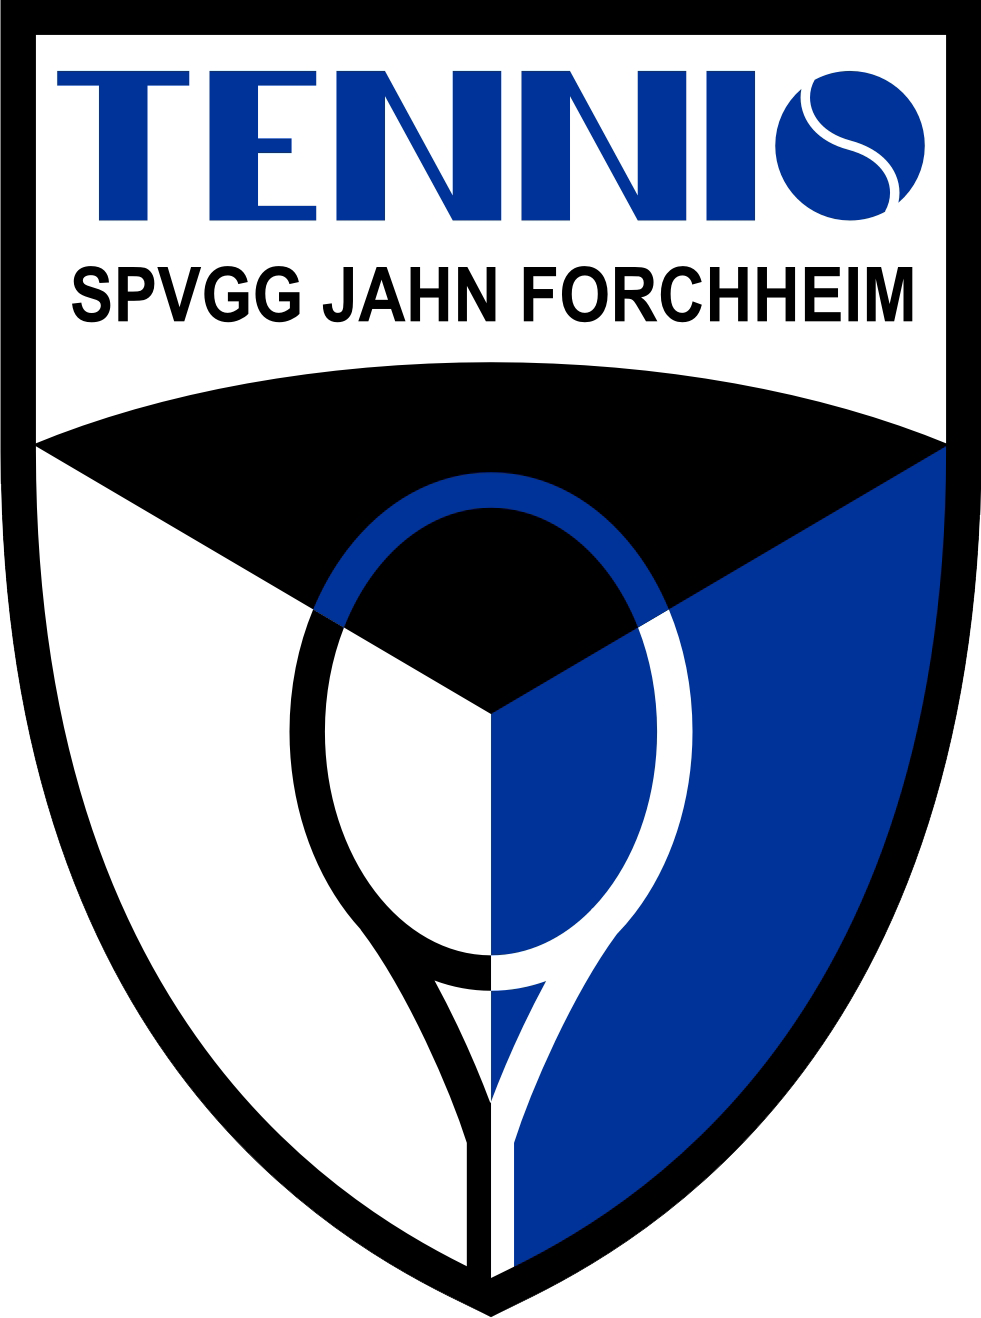 SpVgg Jahn Forchheim – Tennisabteilung